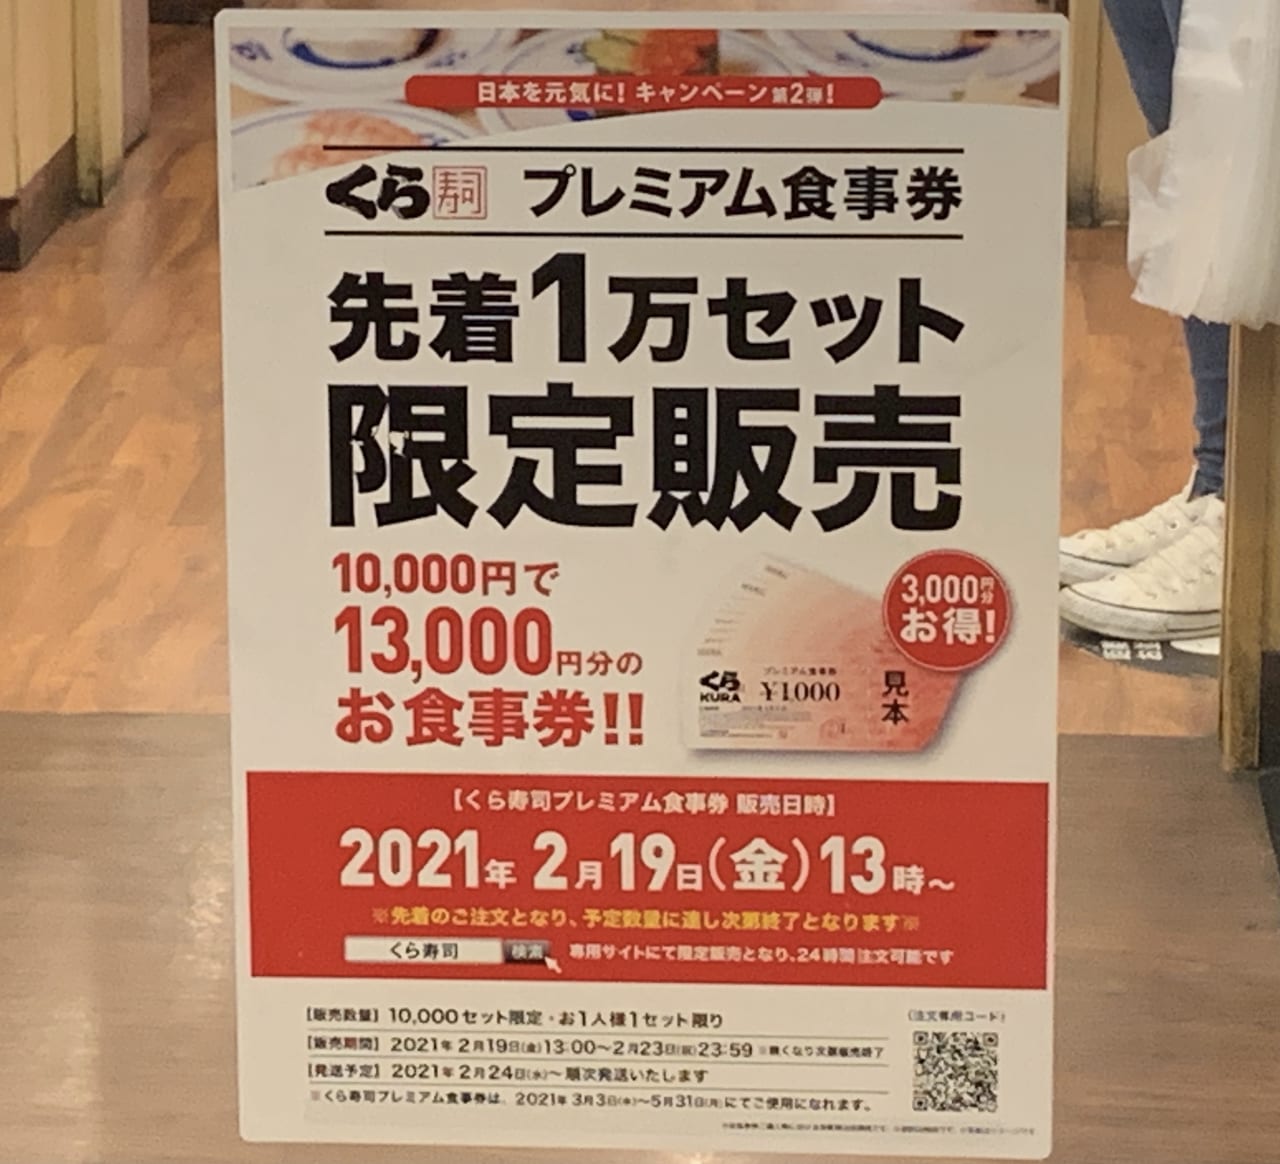 3000円お得な、くら寿司プレミアム商品券を販売します。